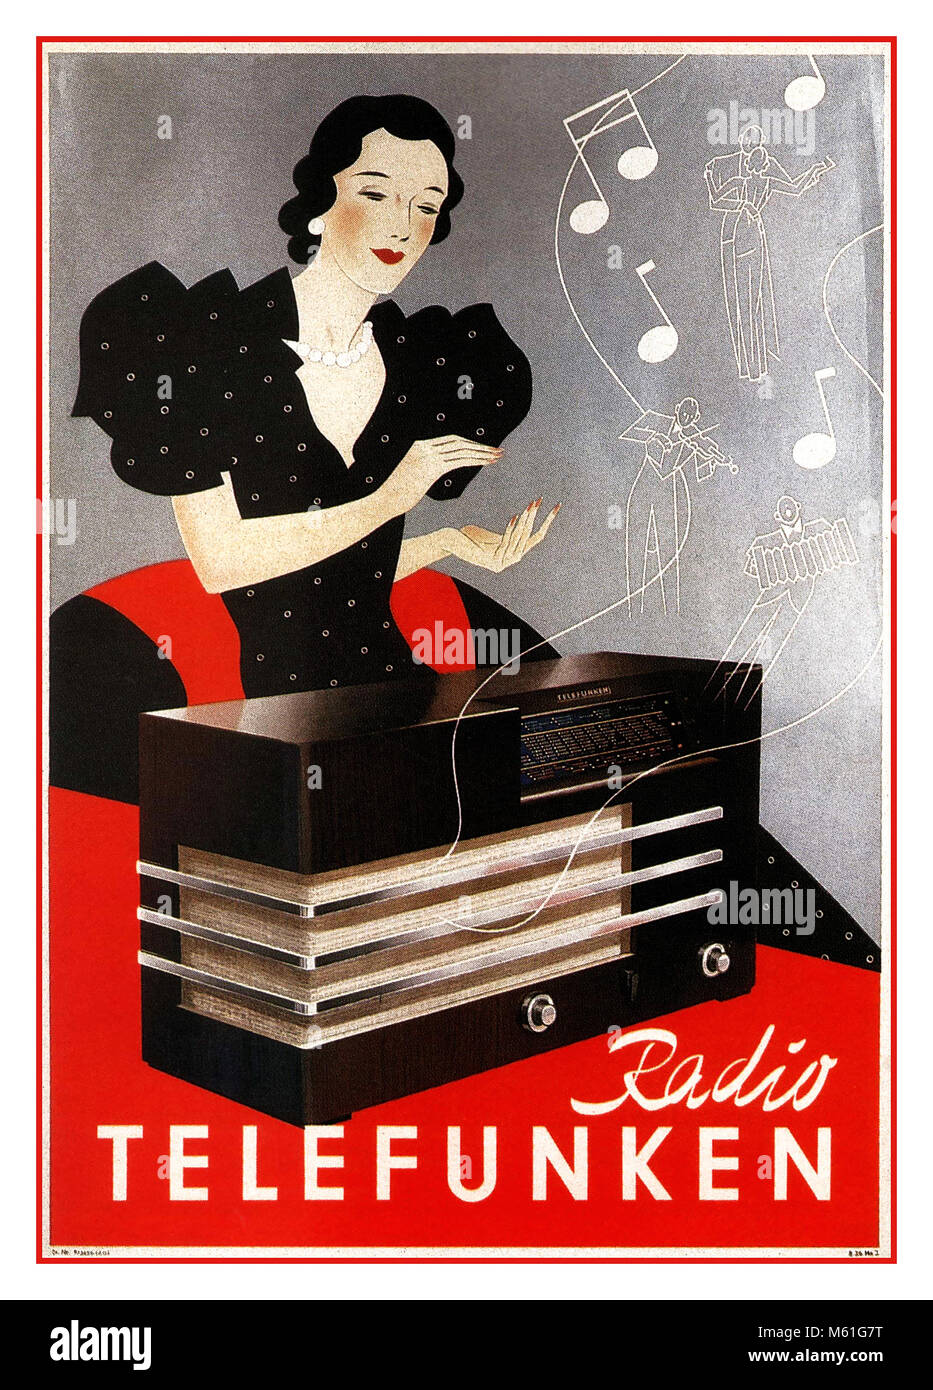 1935' Telefunken Radio Vintage avant guerre affiche publicitaire pour la  radio et la télévision allemande Telefunken electricals company Photo Stock  - Alamy